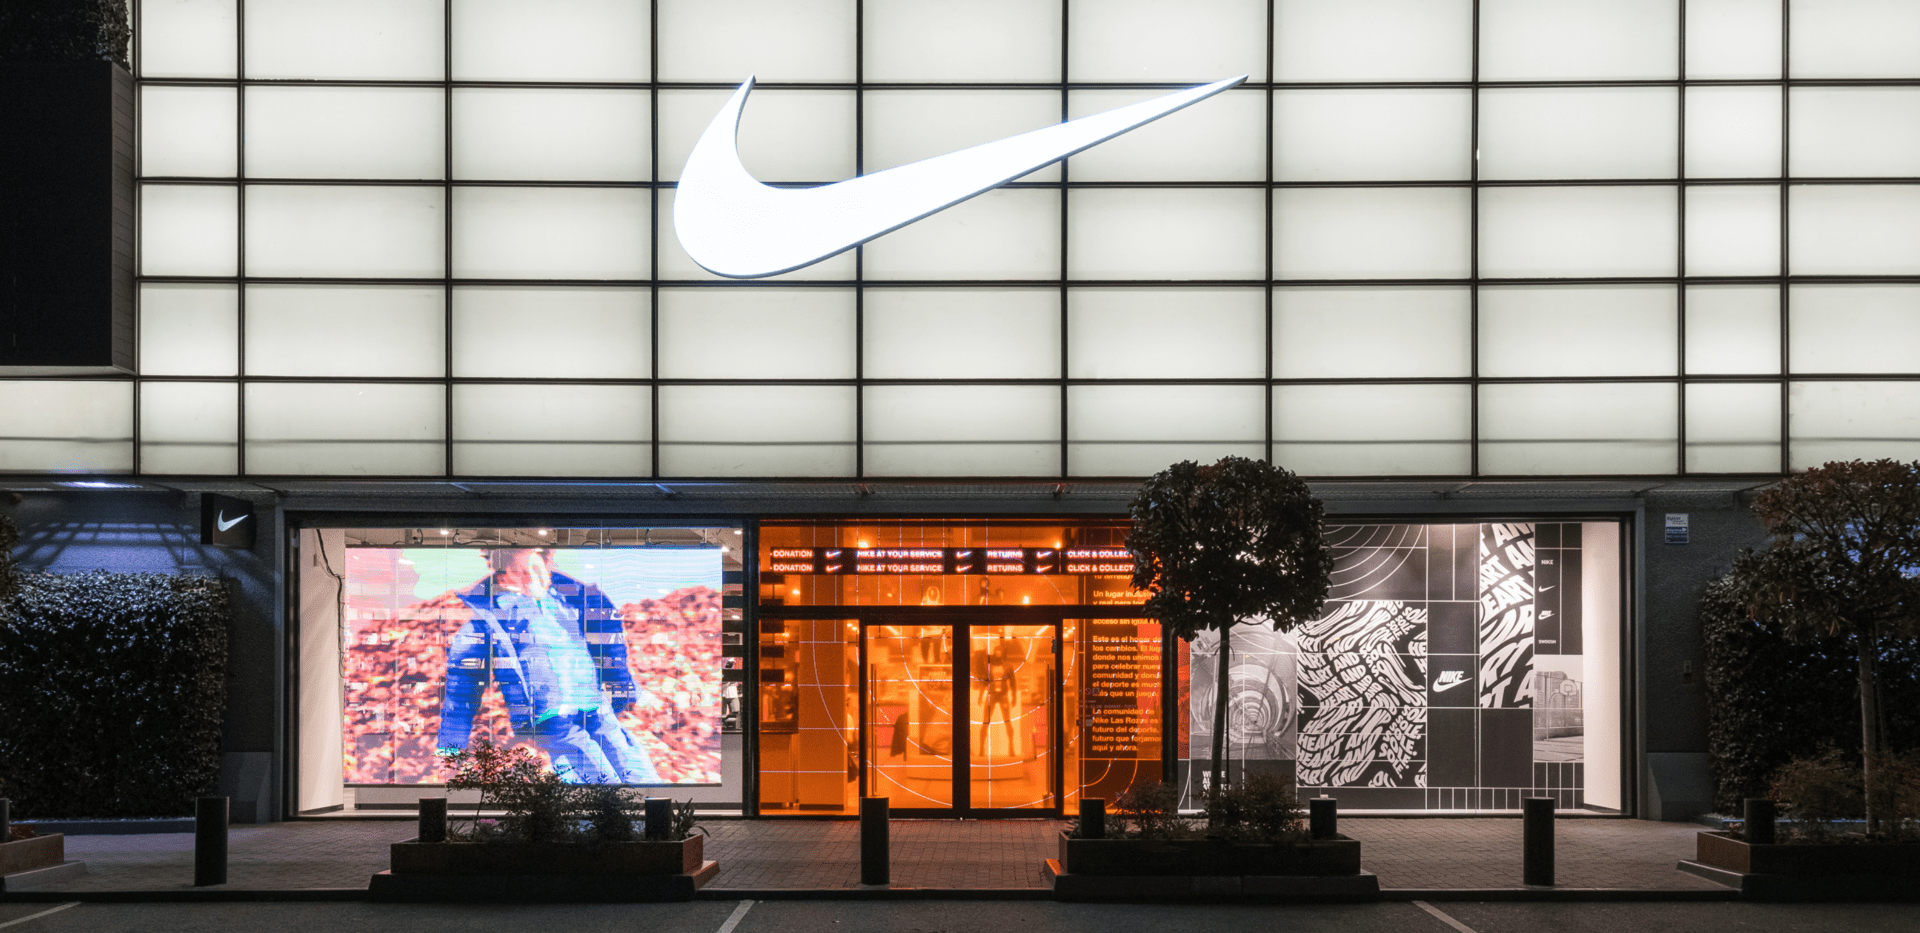 en Factory Store i nærheden af Nike DK